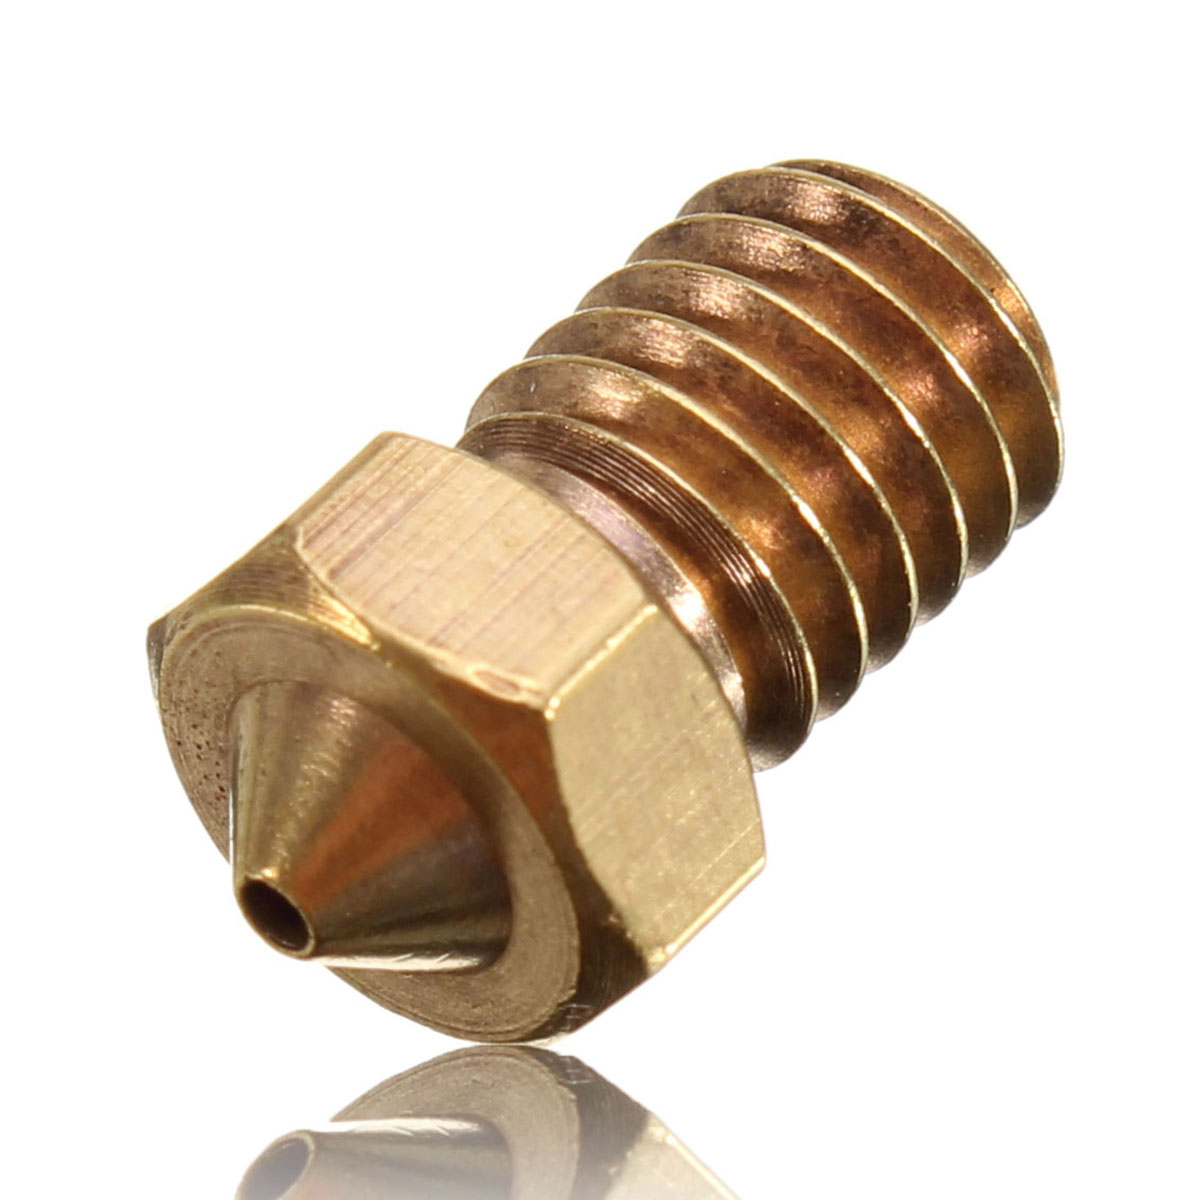 

5PCS V6 Brass Nozzle 1MM For 1.75mm Filament Copper Nozzle Extruder Print Head 3D Printer